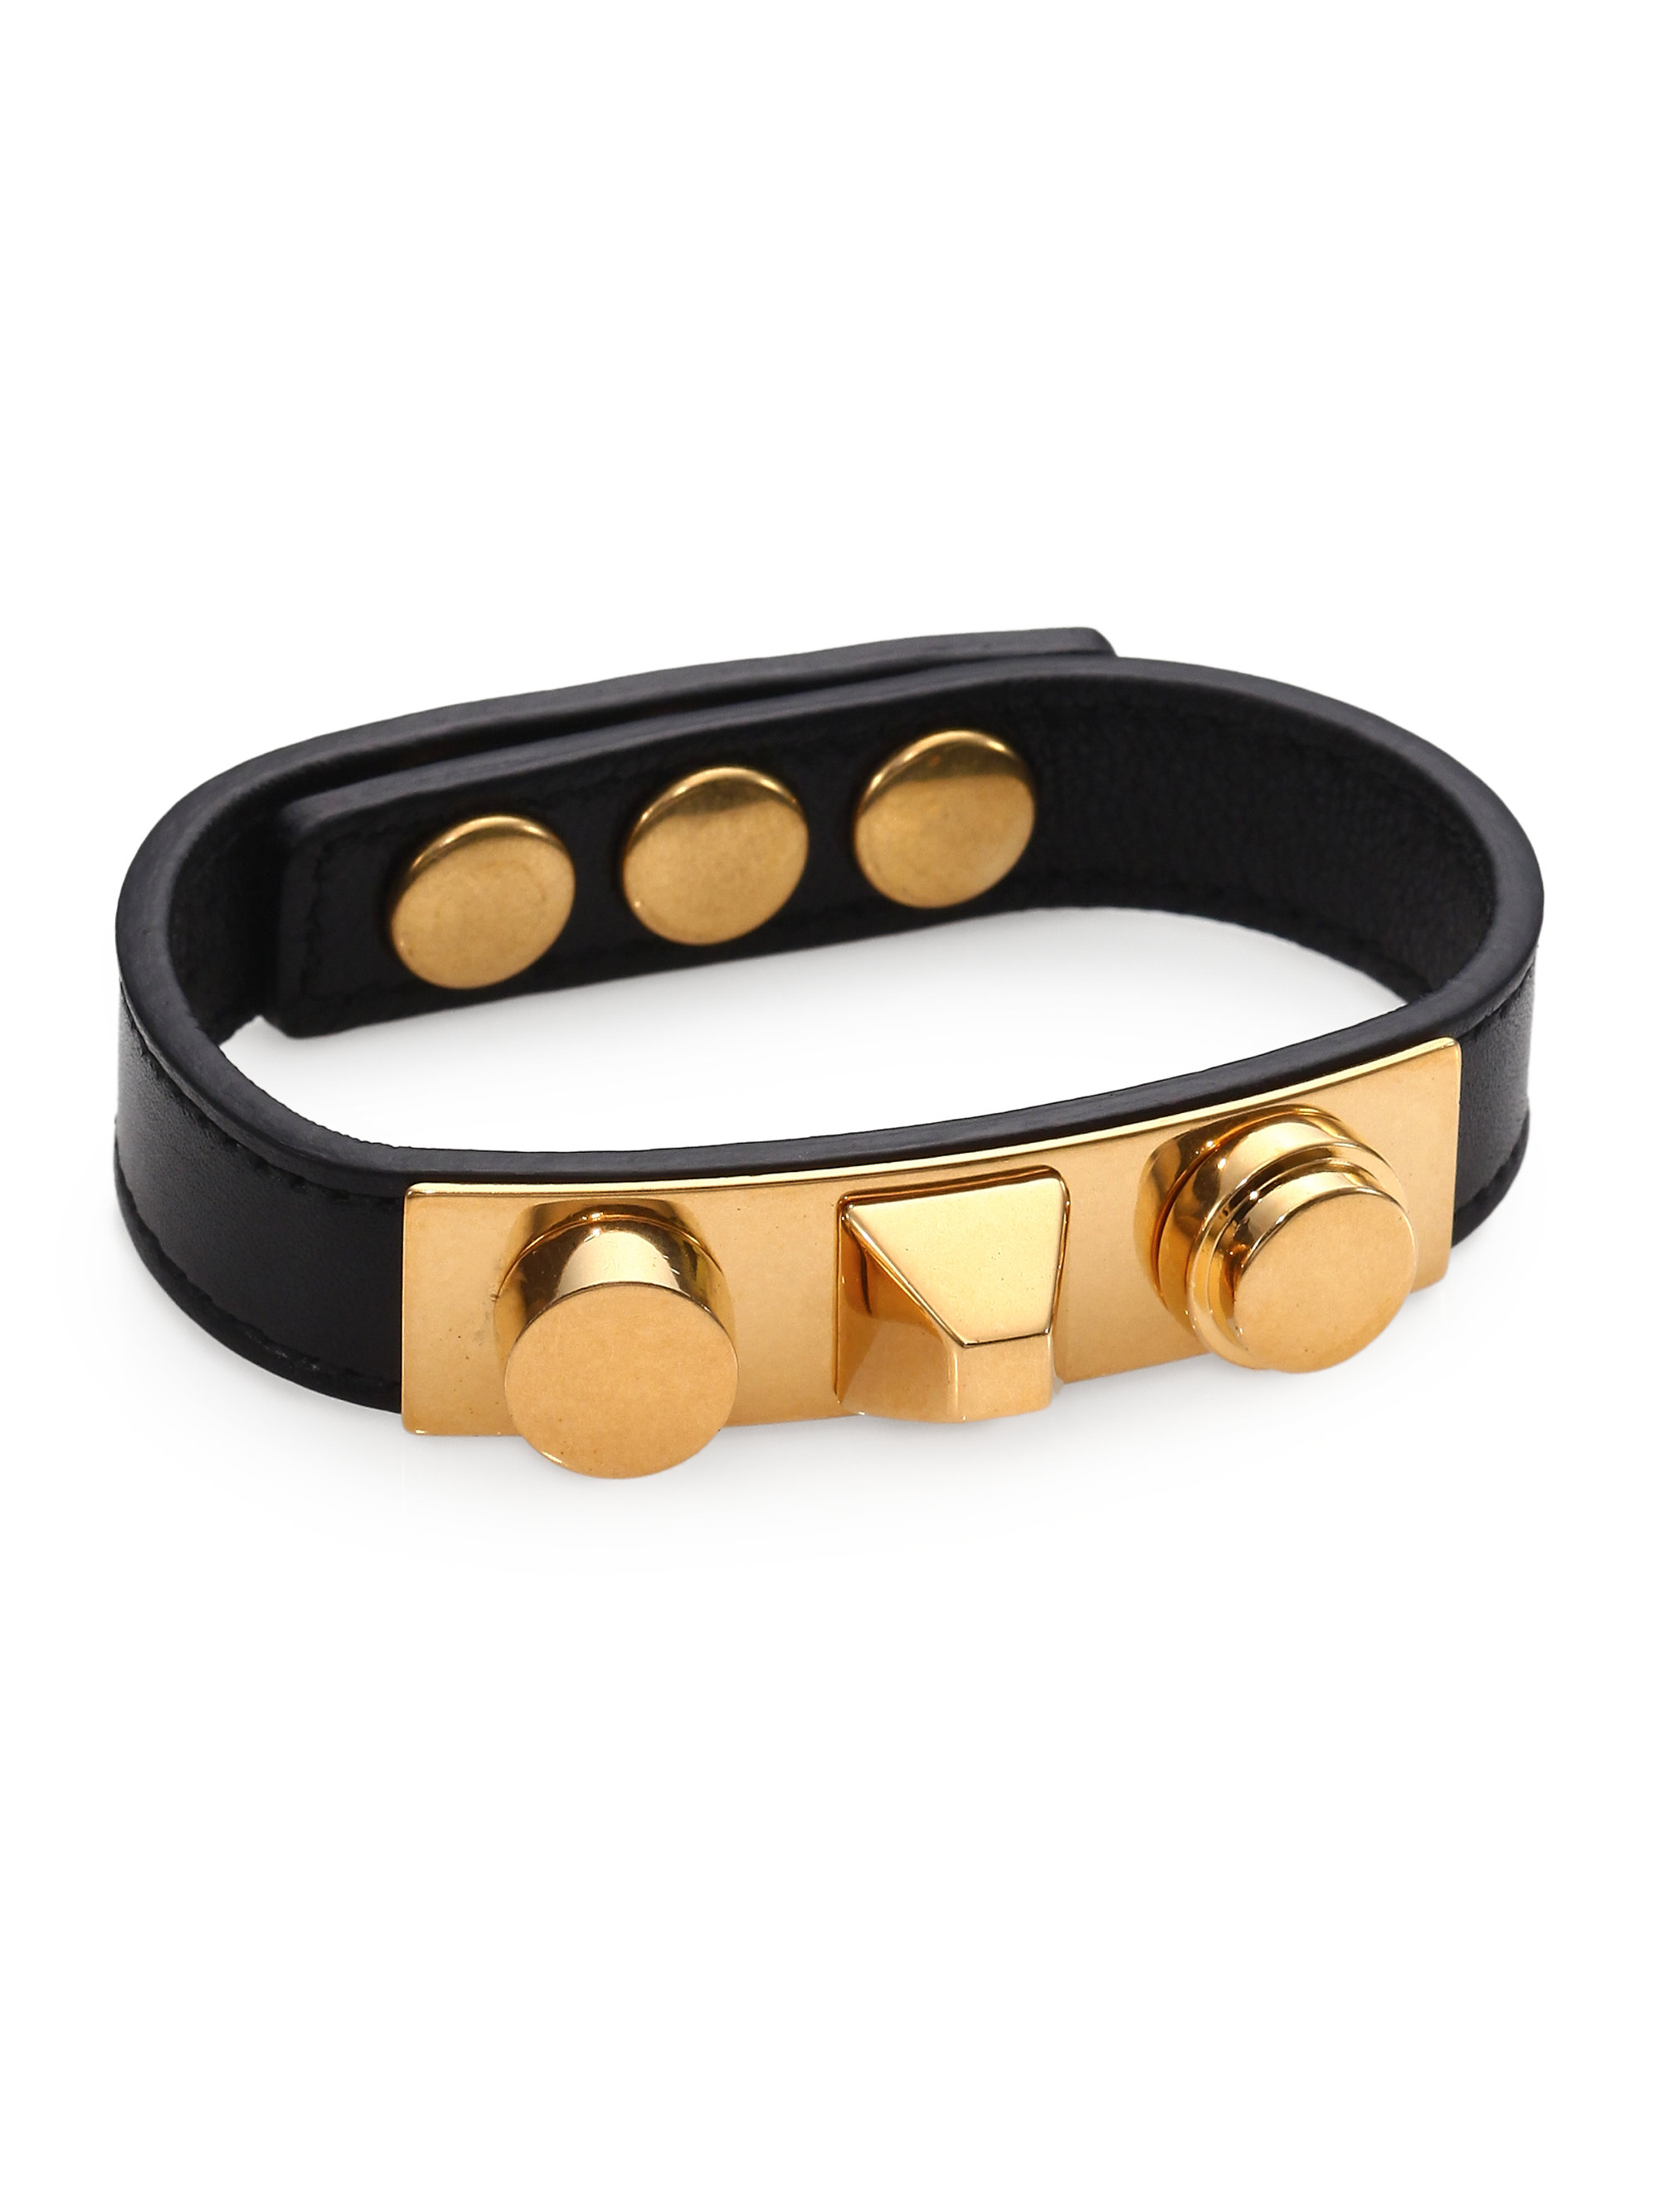 Saint laurent Classic 3 Clous Studded Leather Bracelet/goldtone in